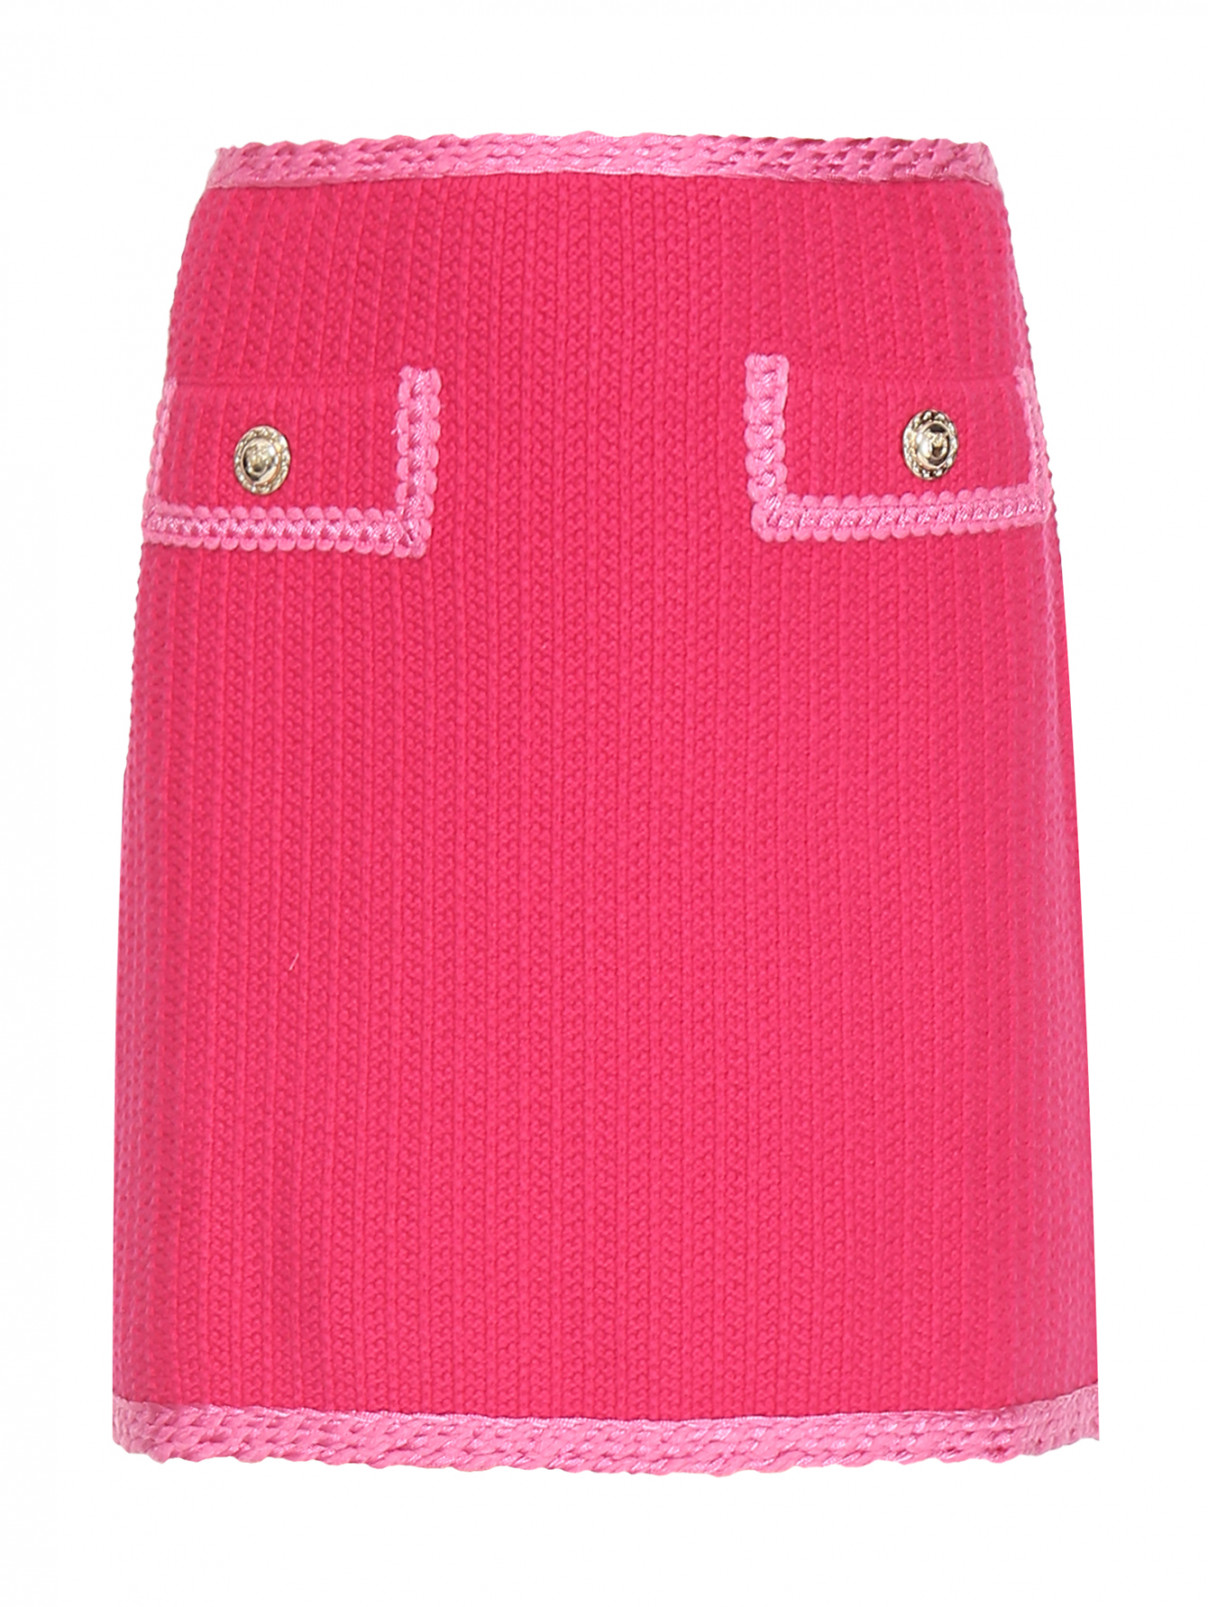 Вязаная юбка-мини из хлопка PINKO  –  Общий вид  – Цвет:  Розовый